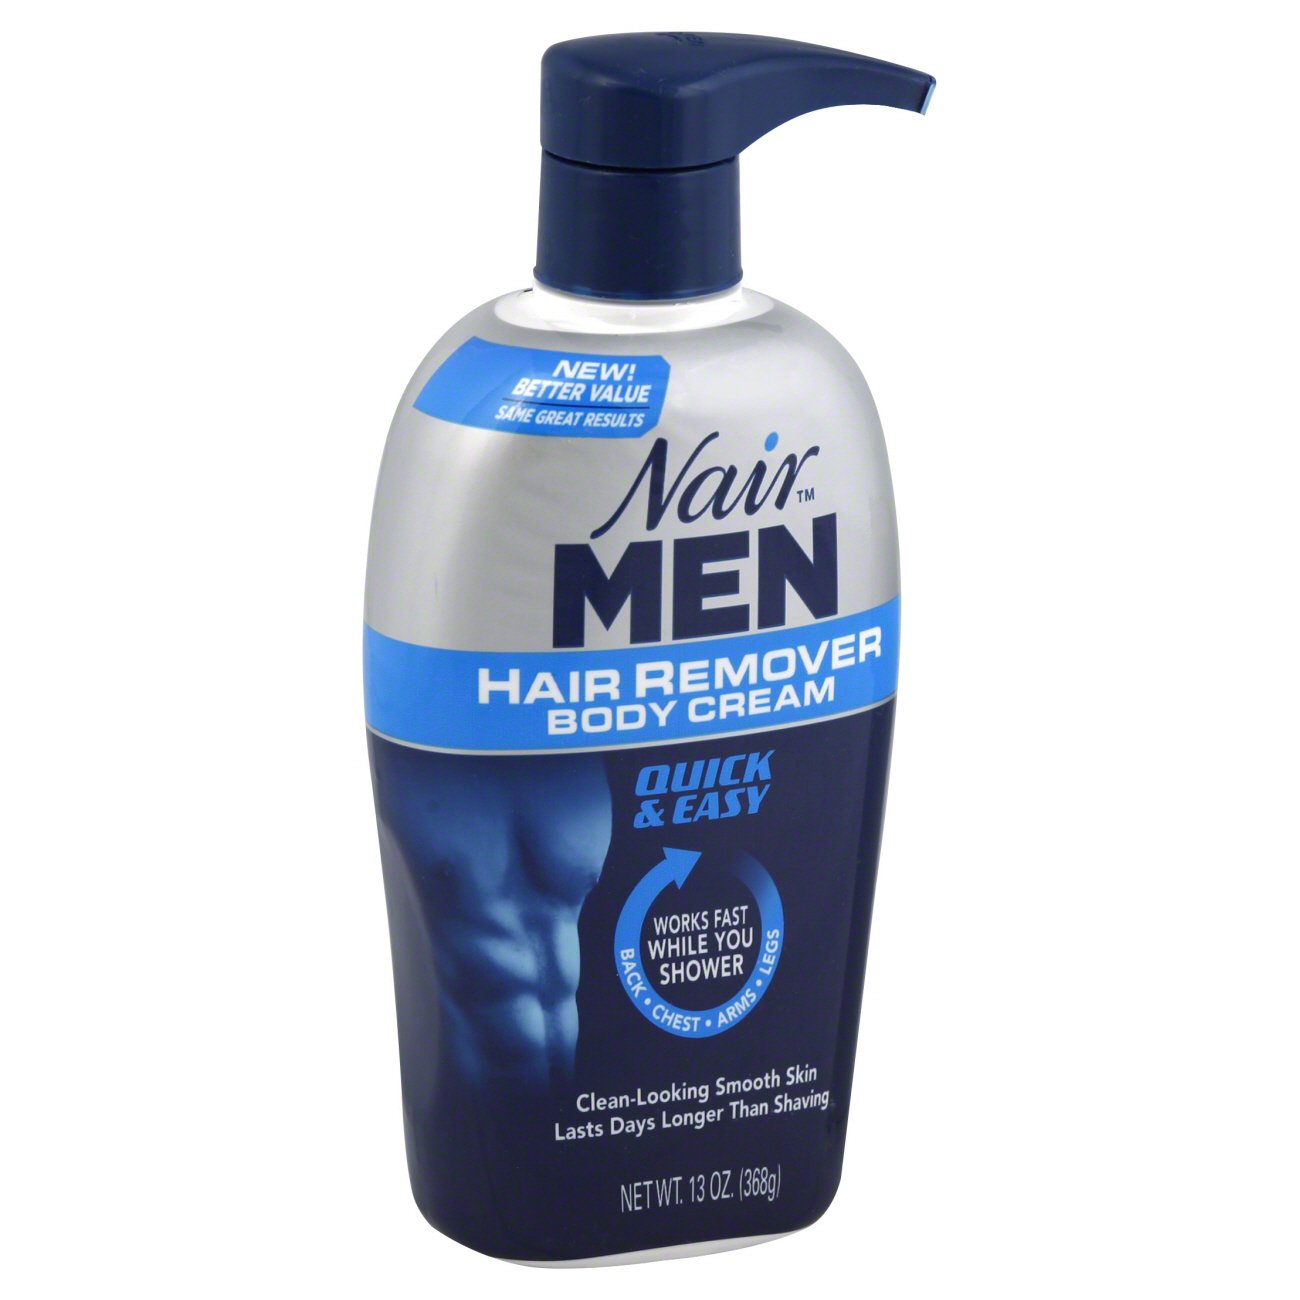 Nair Men Hair Body Cream - Shop Depilatories & Wax at H-E-B